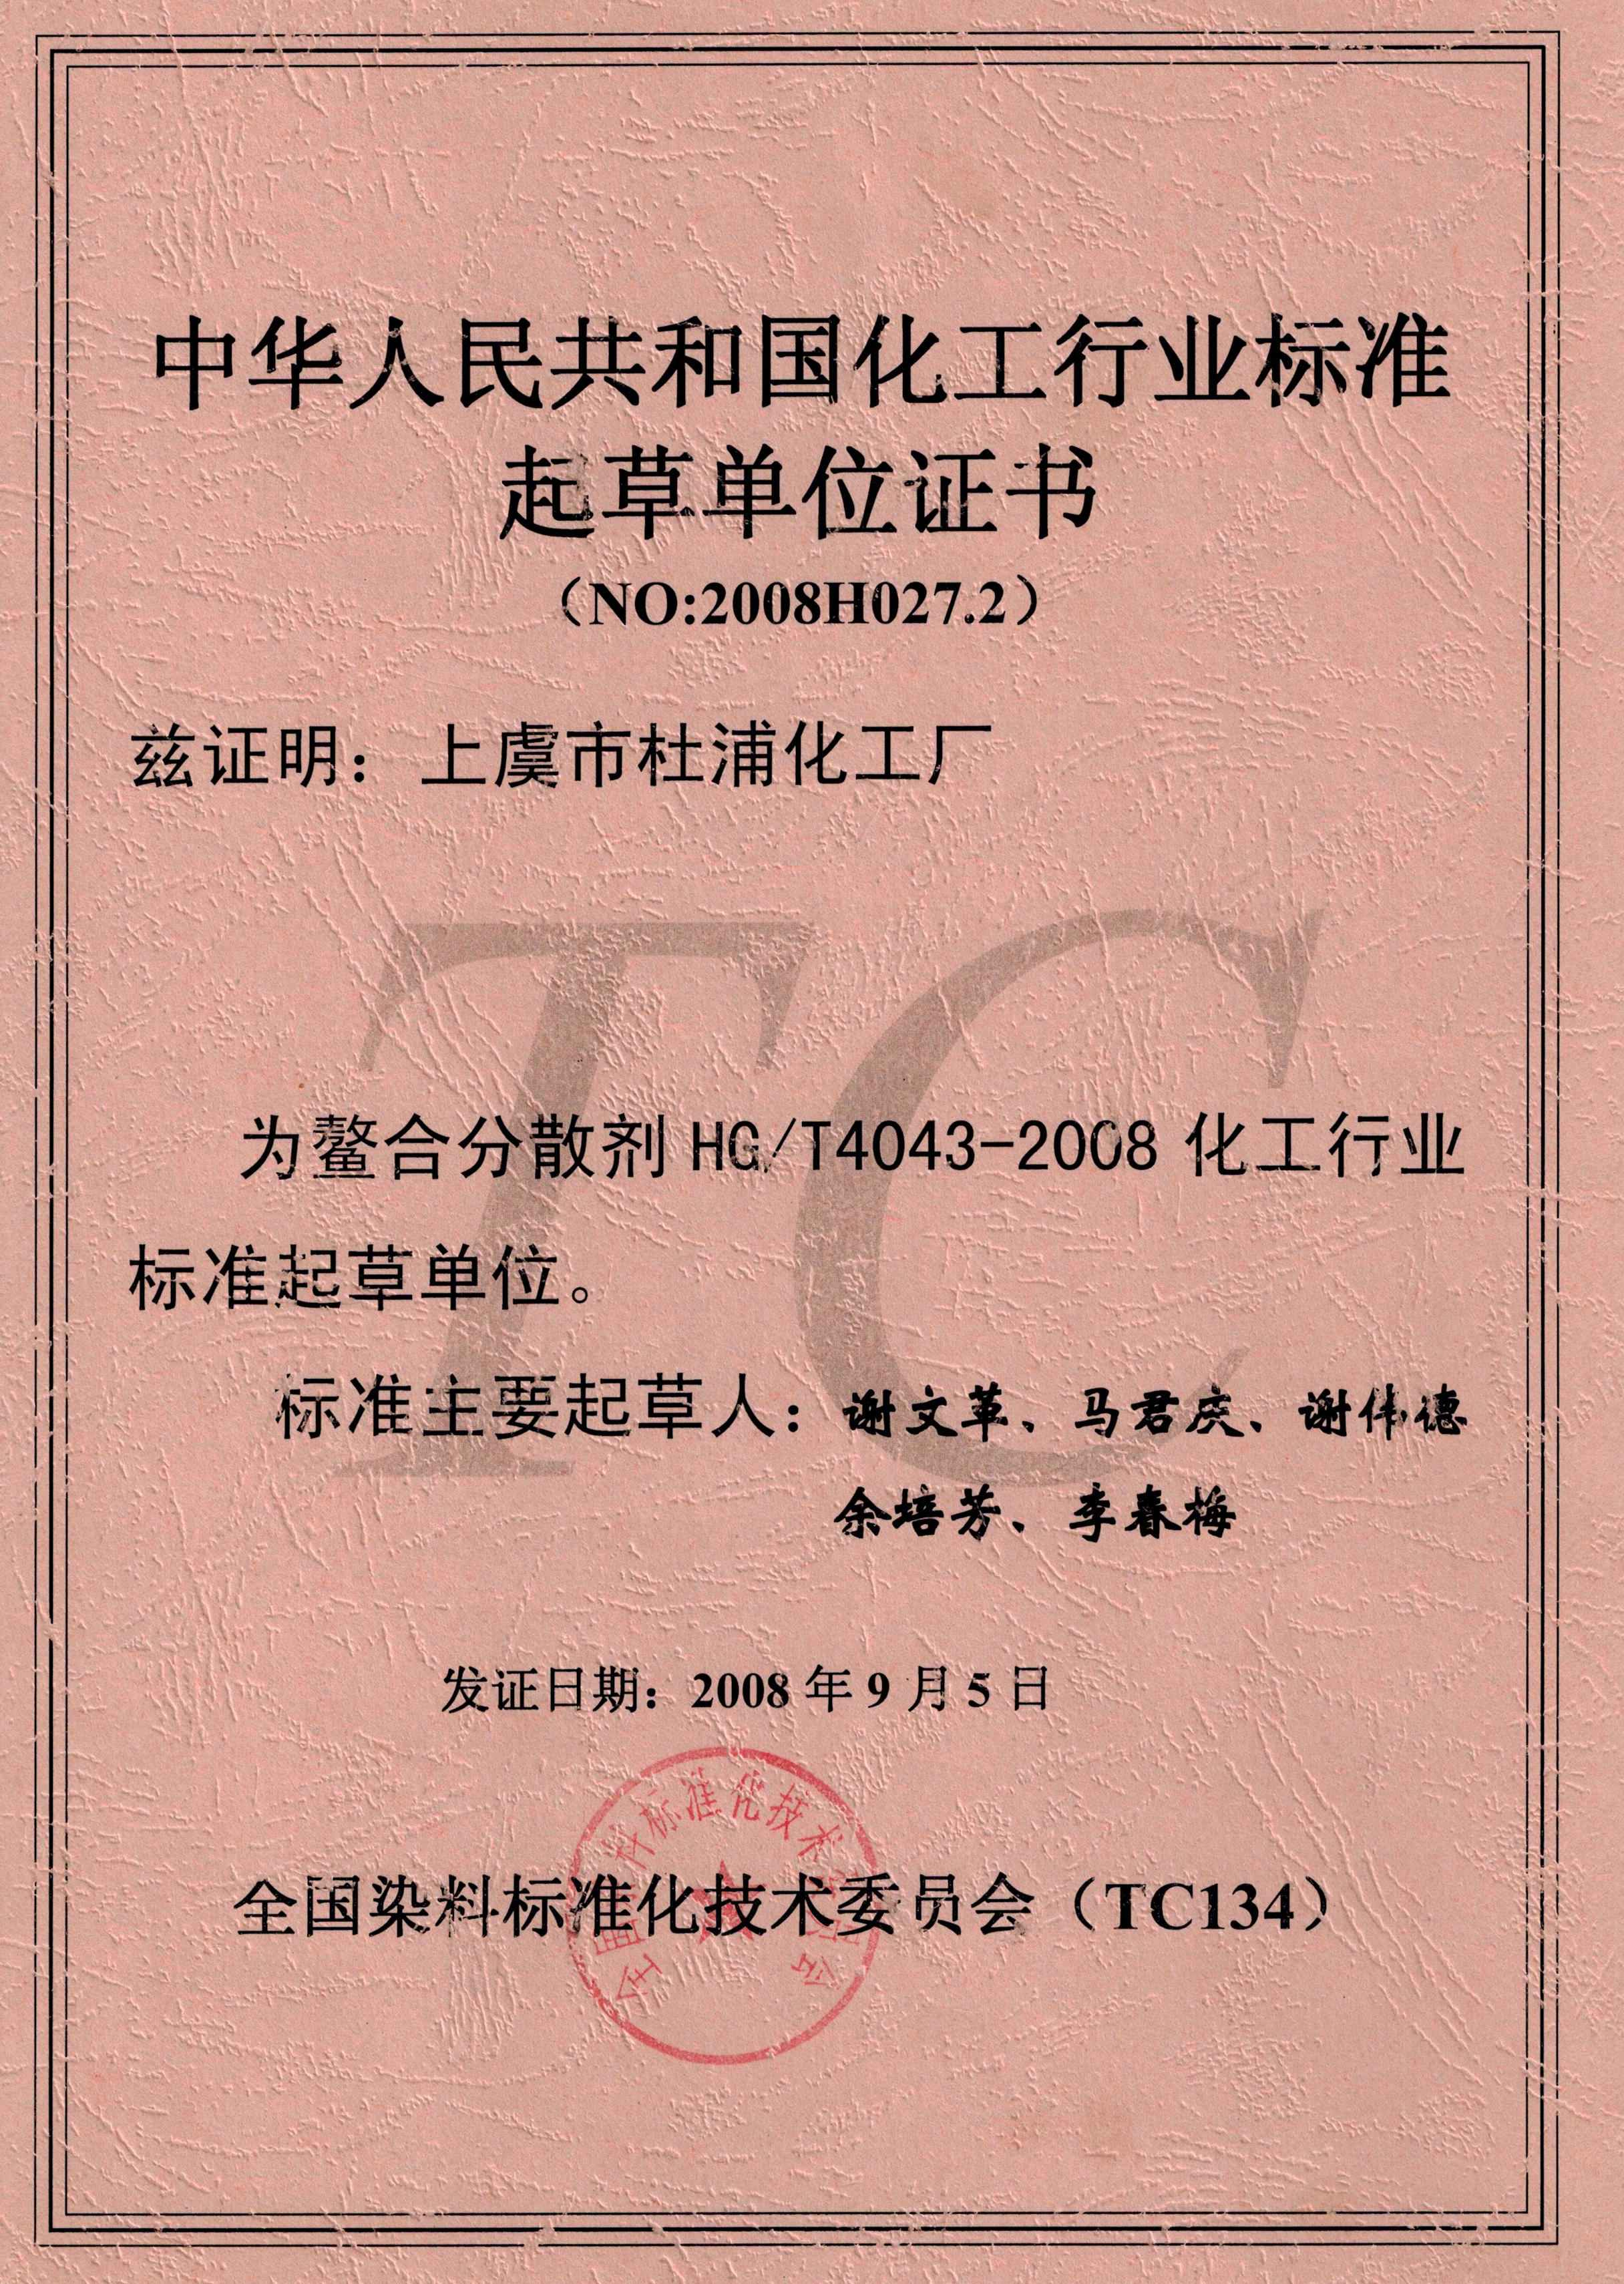 中华人民共和国化工行业标准起草单位证书（NO:2008H027.2）